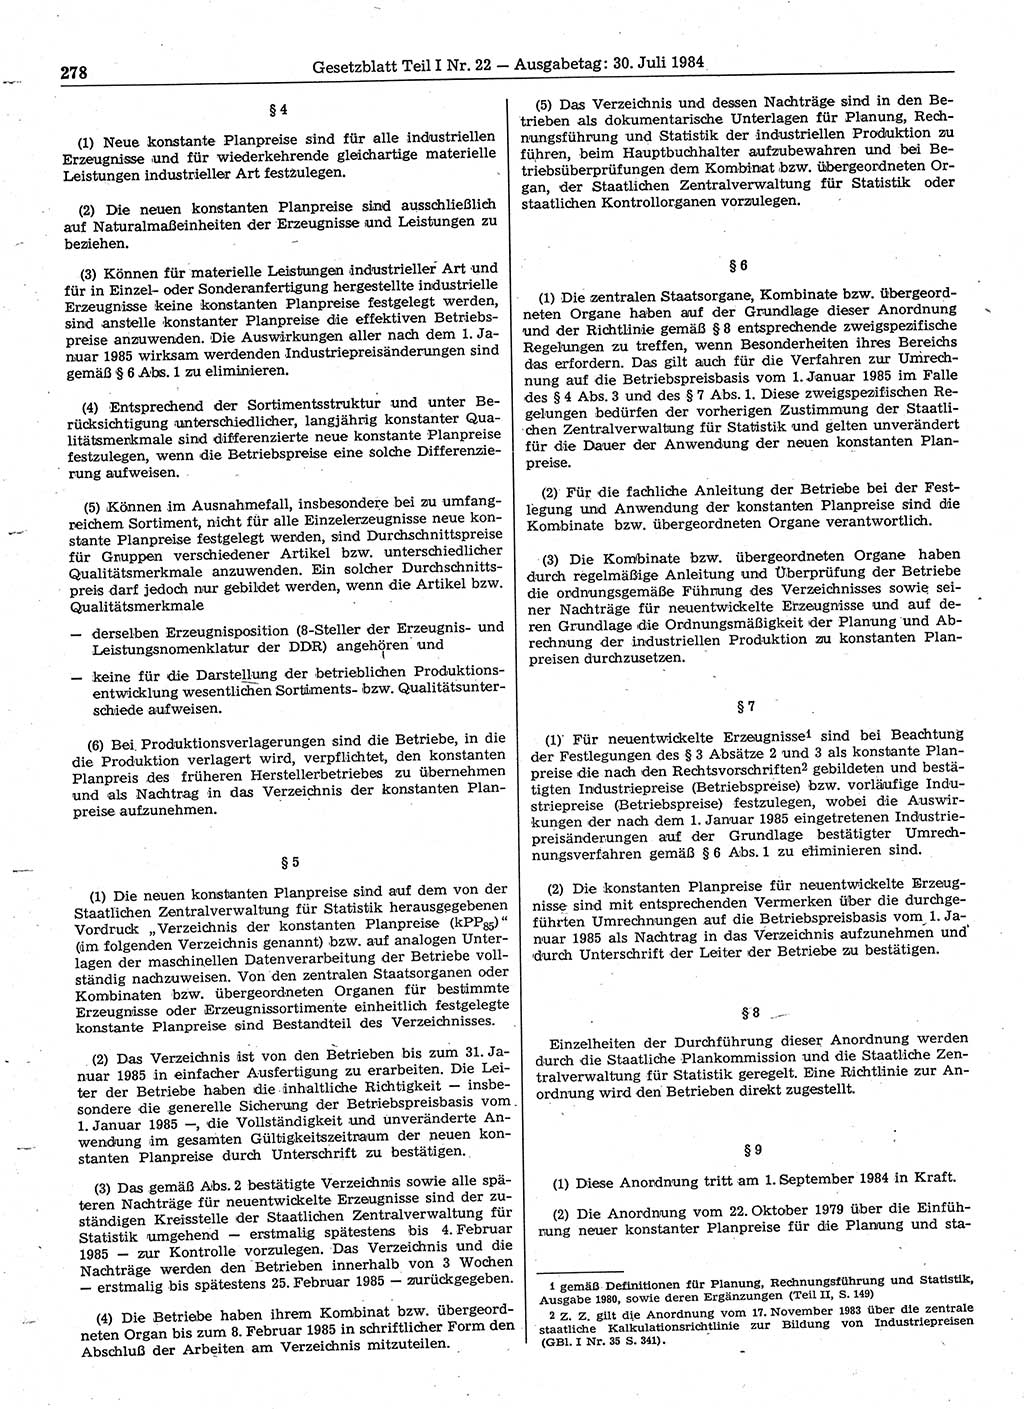 Gesetzblatt (GBl.) der Deutschen Demokratischen Republik (DDR) Teil Ⅰ 1984, Seite 278 (GBl. DDR Ⅰ 1984, S. 278)